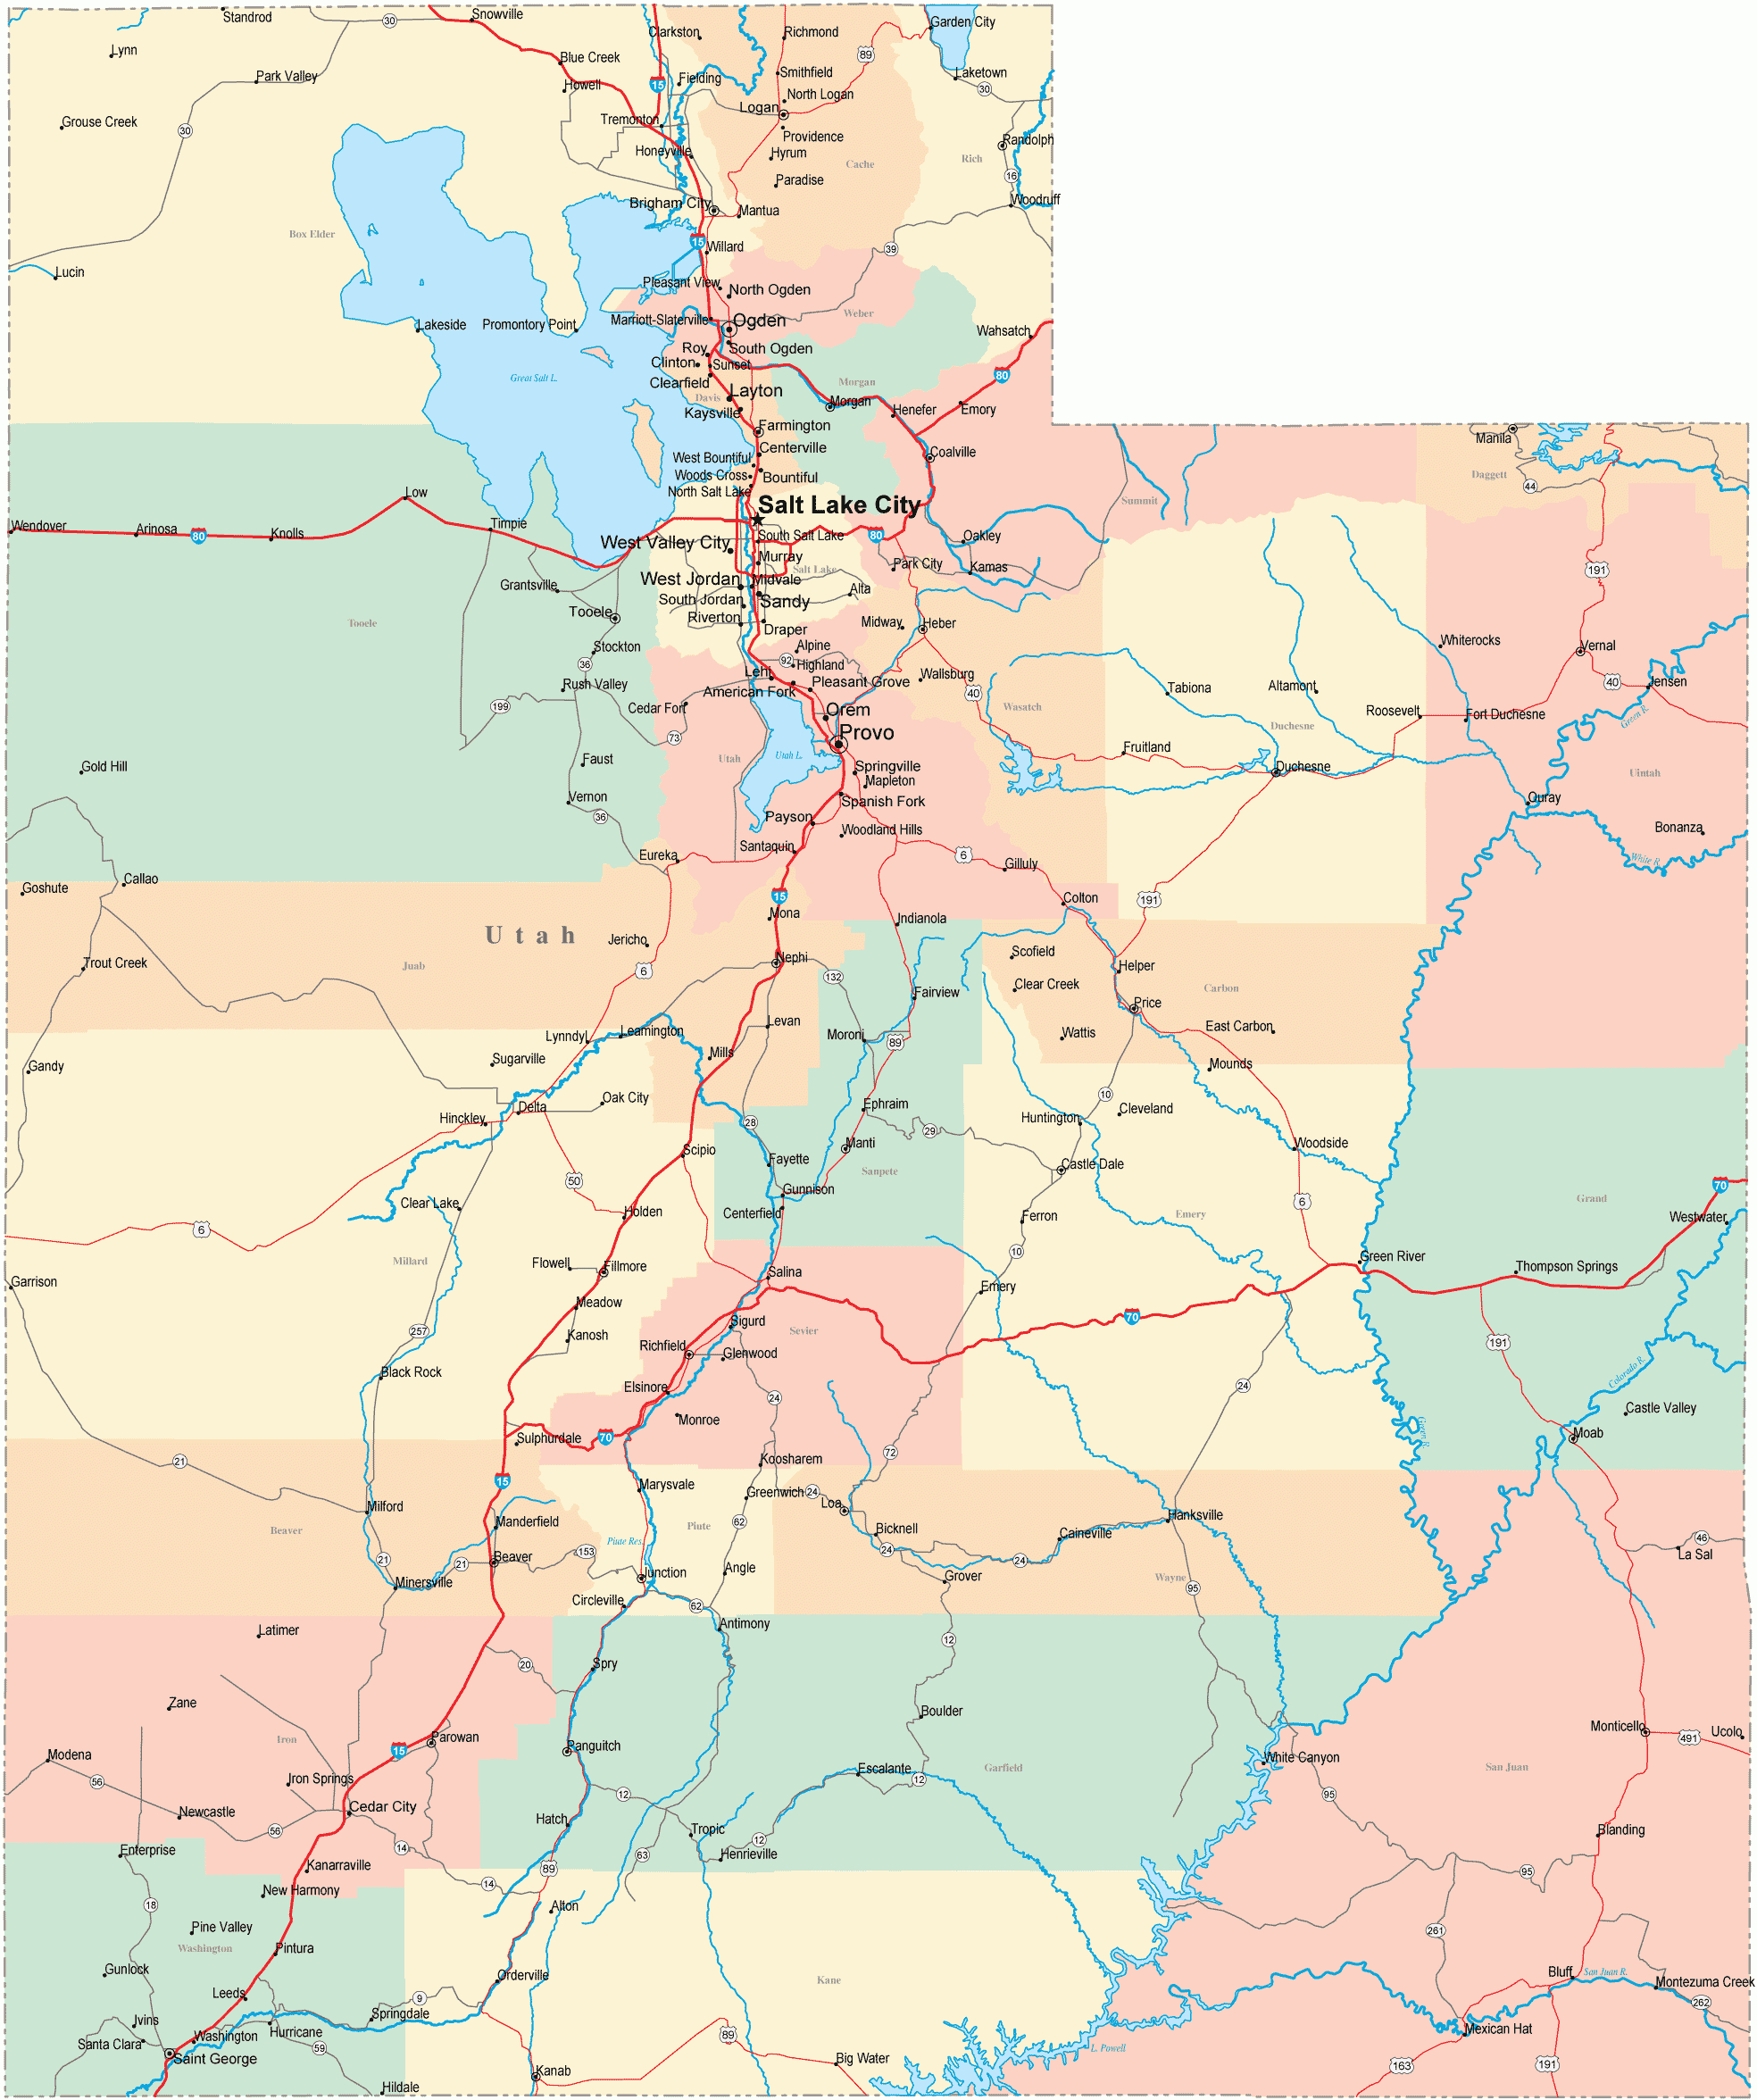 Utah Road Map - Ut Road Map - Utah Highway Map - Utah Road Map Printable